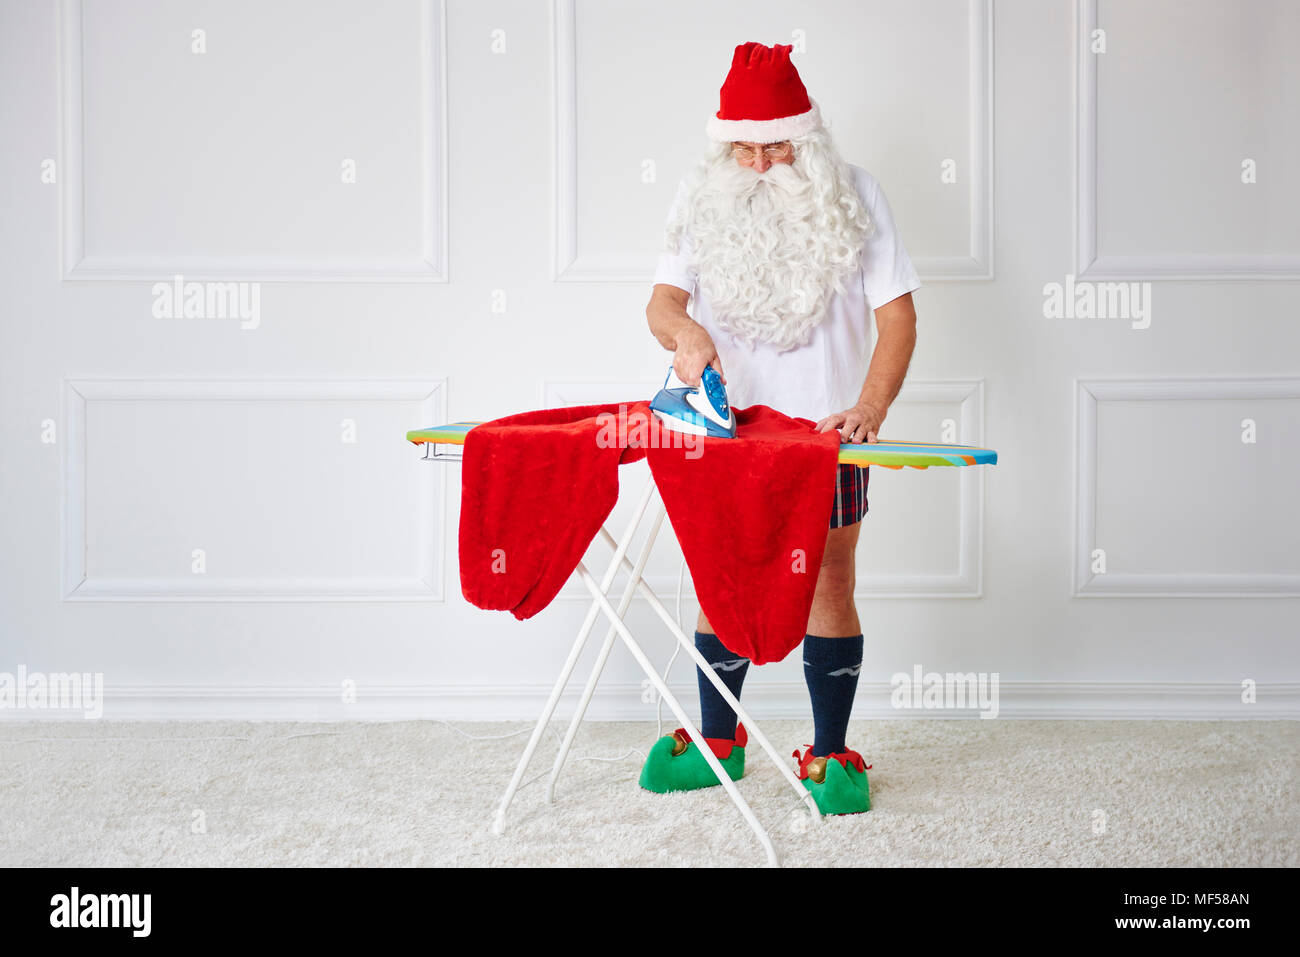 Santa claus ironing his pants Stock Photo